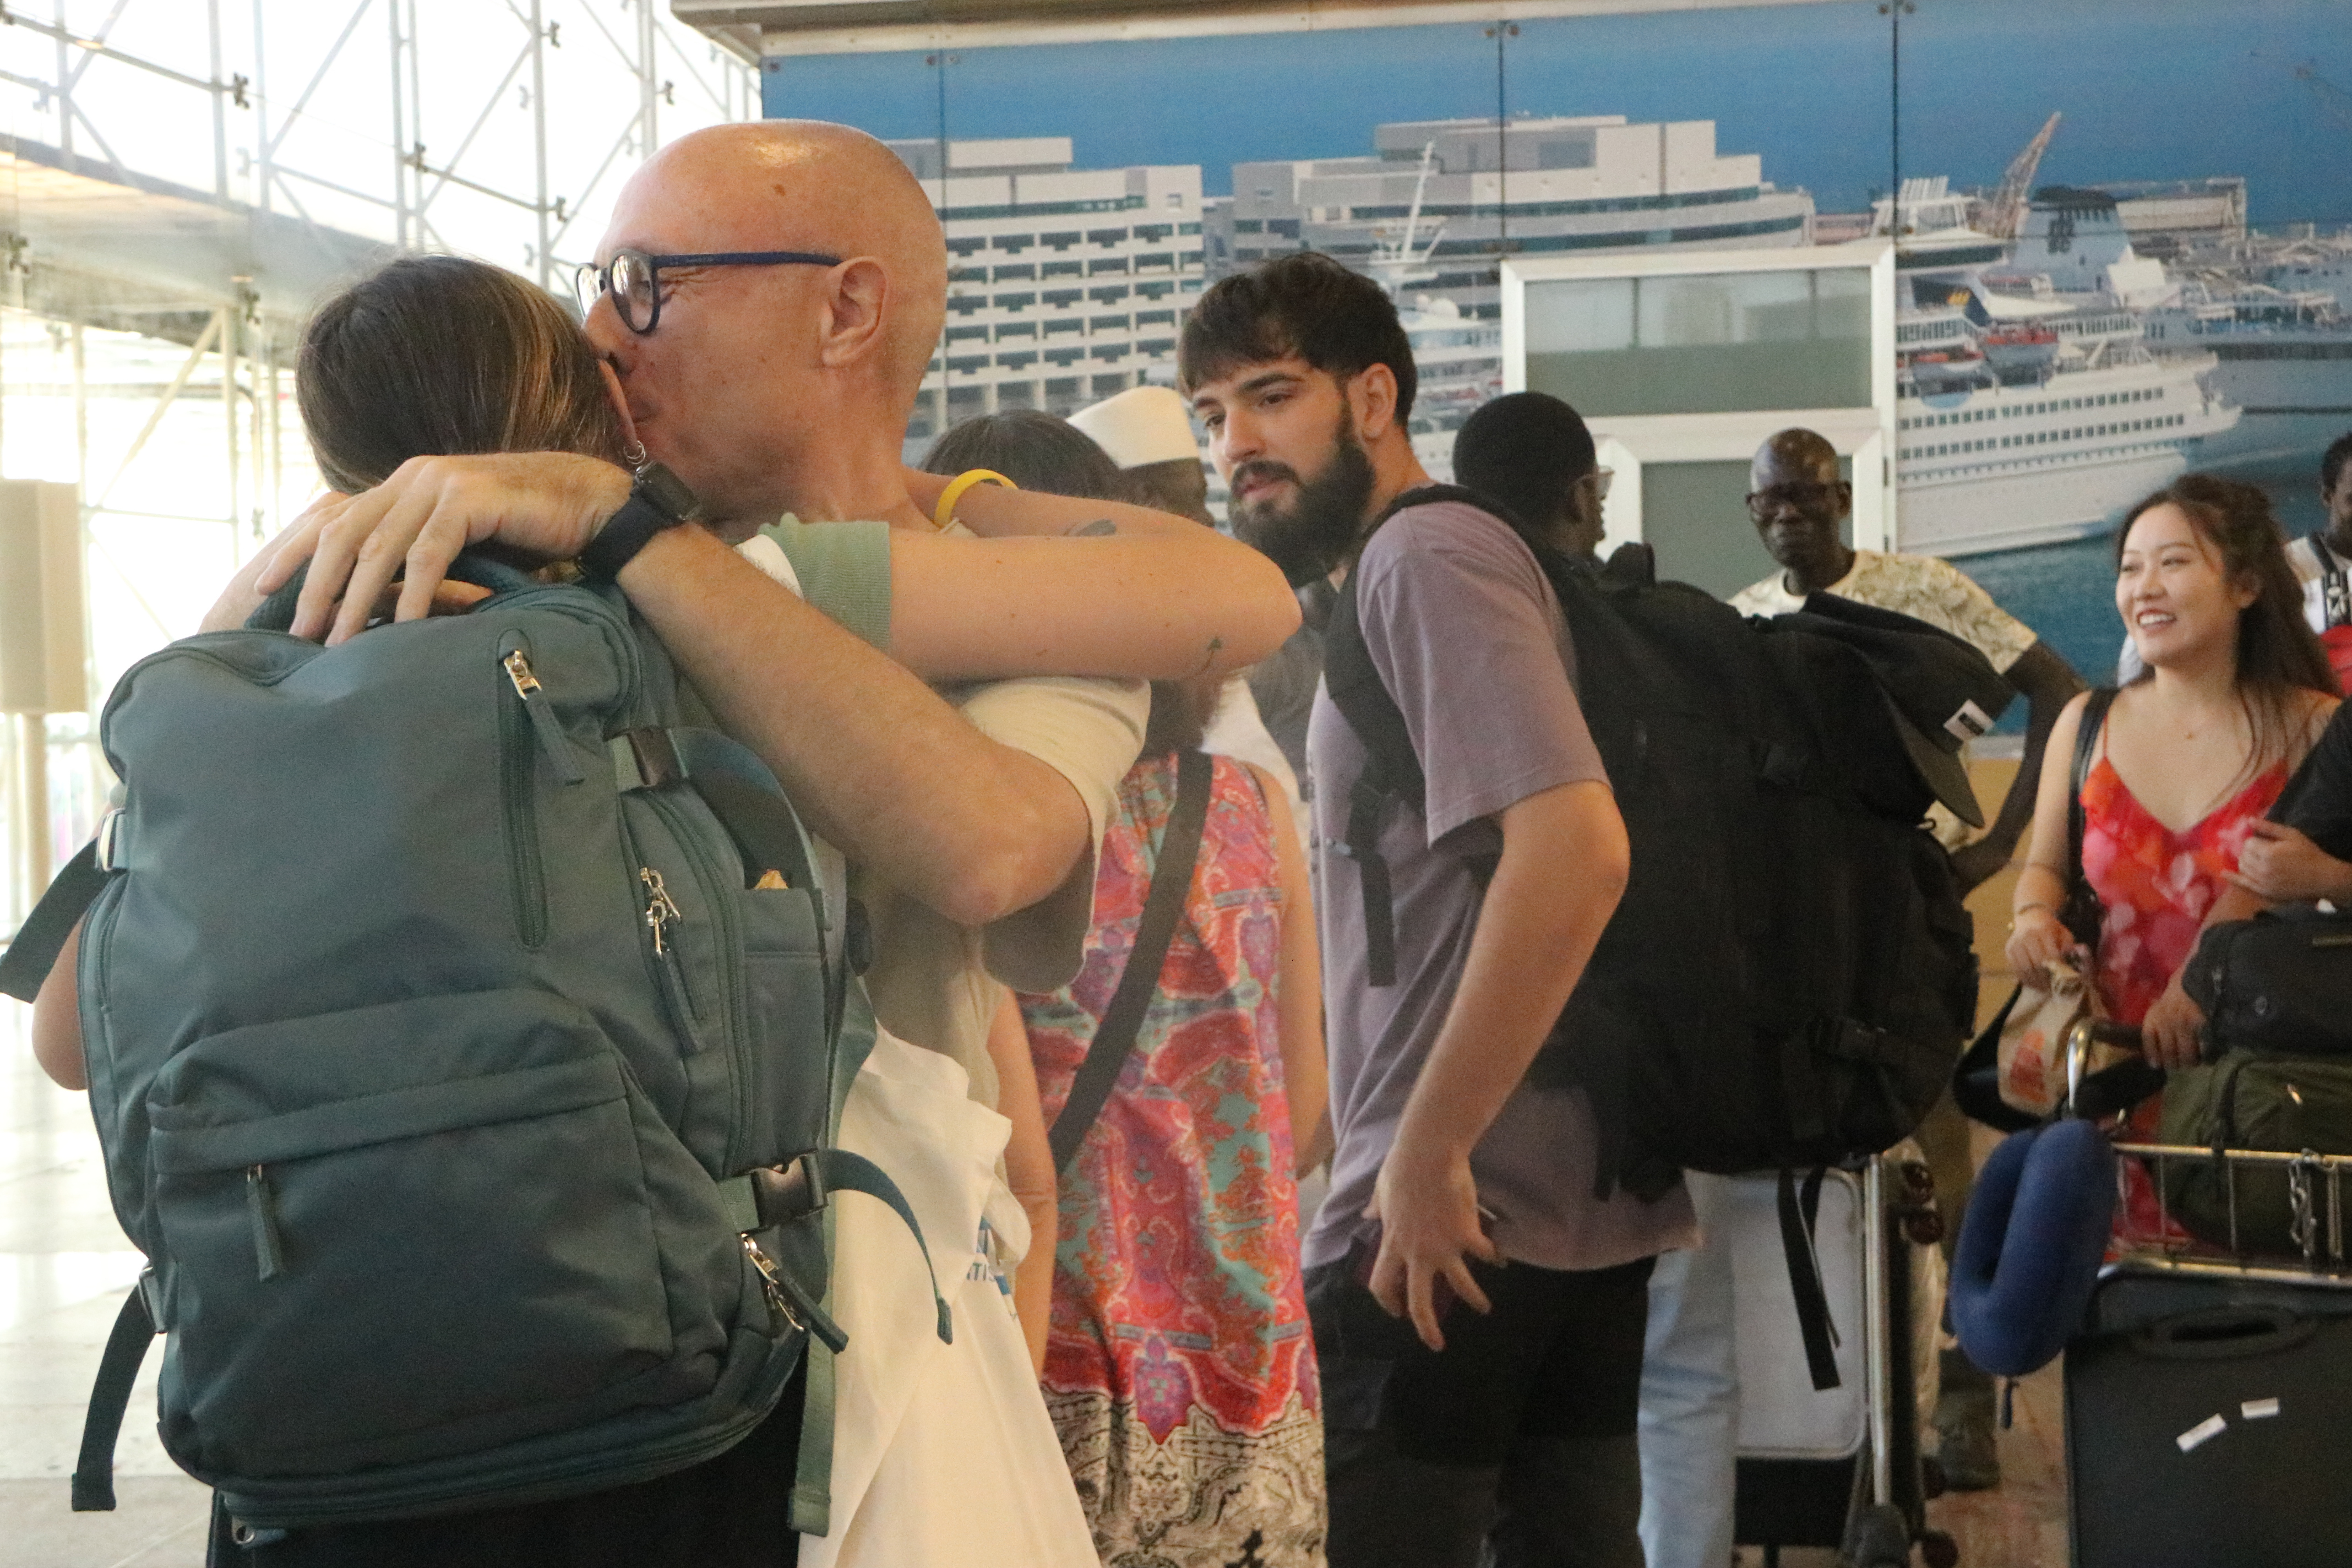 Passatgers procedents del Marroc arriben a Barcelona: “És una de les pitjors experiències de la meva vida”